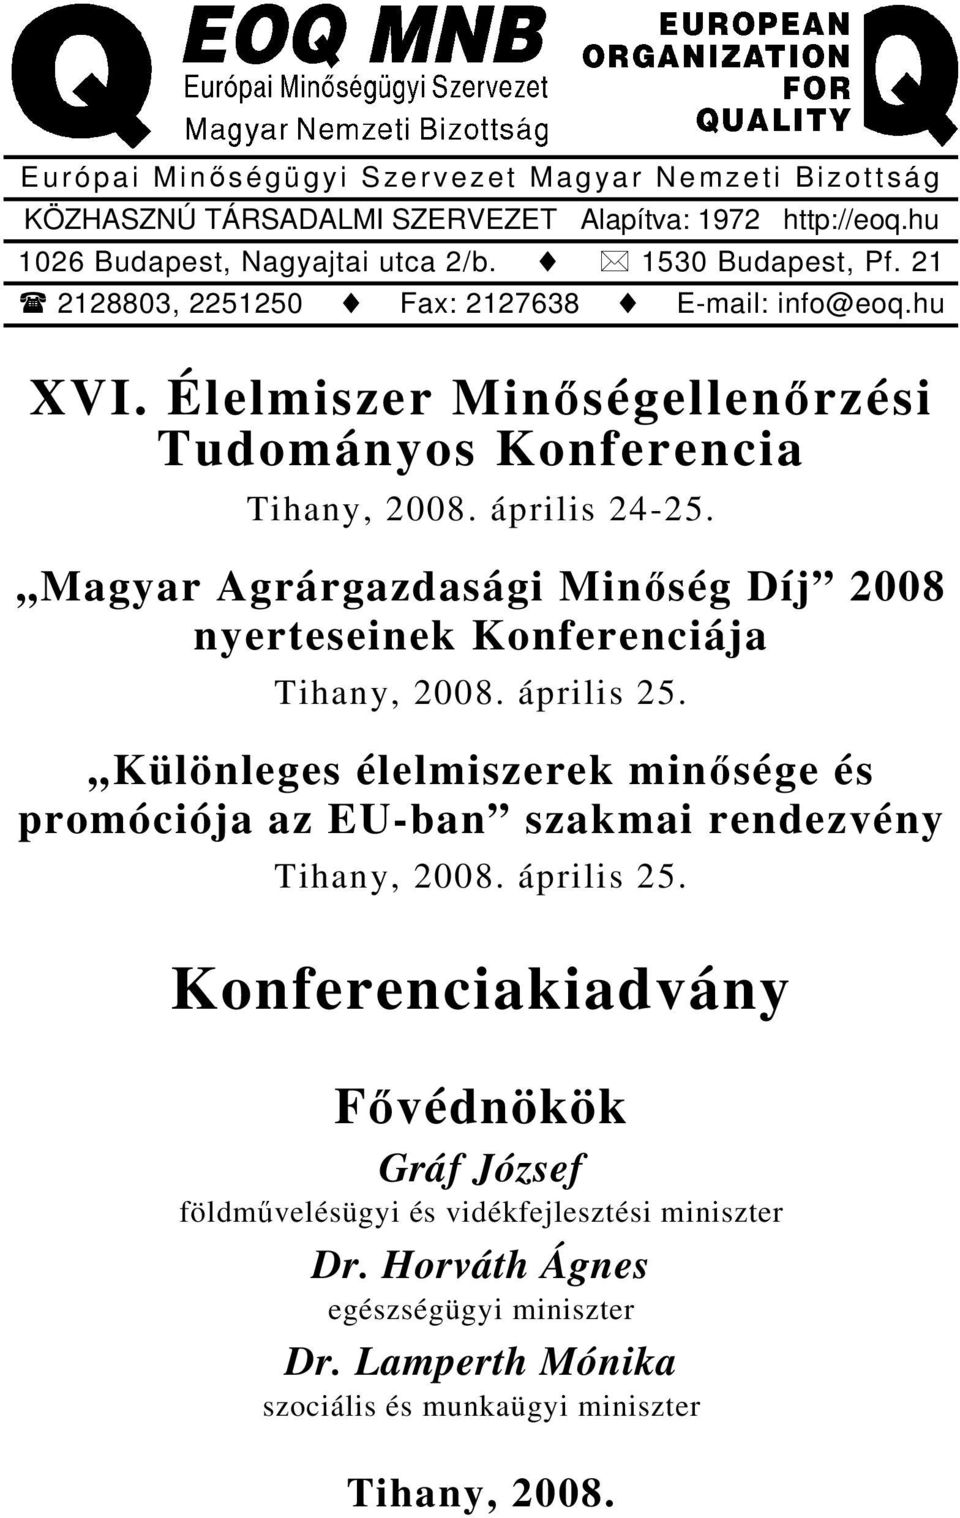 Magyar Agrárgazdasági Minőség Díj 2008 nyerteseinek Konferenciája Tihany, 2008. április 25.